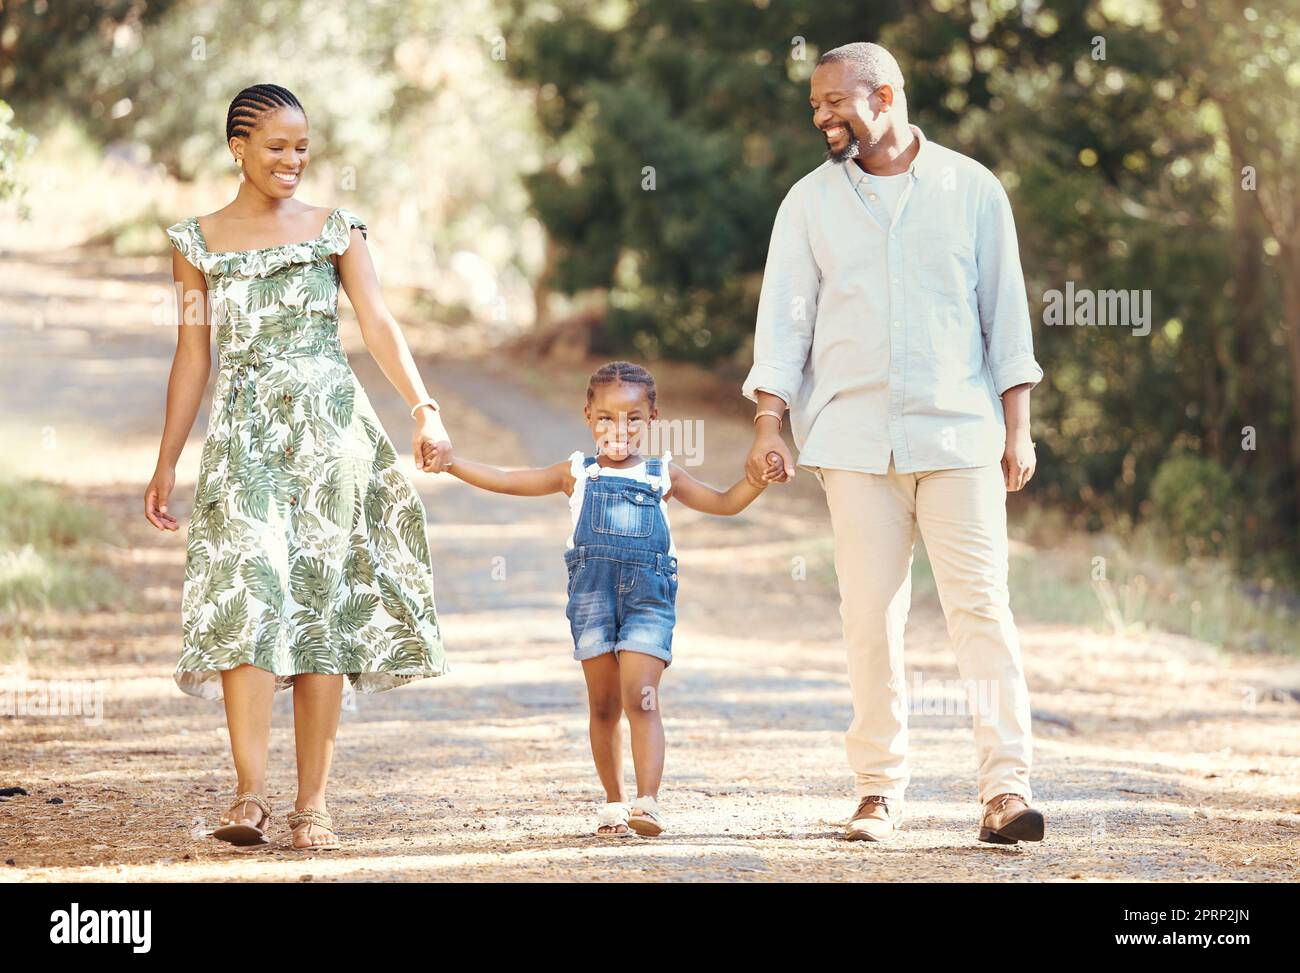 Famille noire, amour et parents actifs marchant avec leur enfant dans la nature pour une aventure et un plaisir en plein air. Homme et femme africains heureux avec leur fille, en voyage, en vacances et à pied de loisirs Banque D'Images